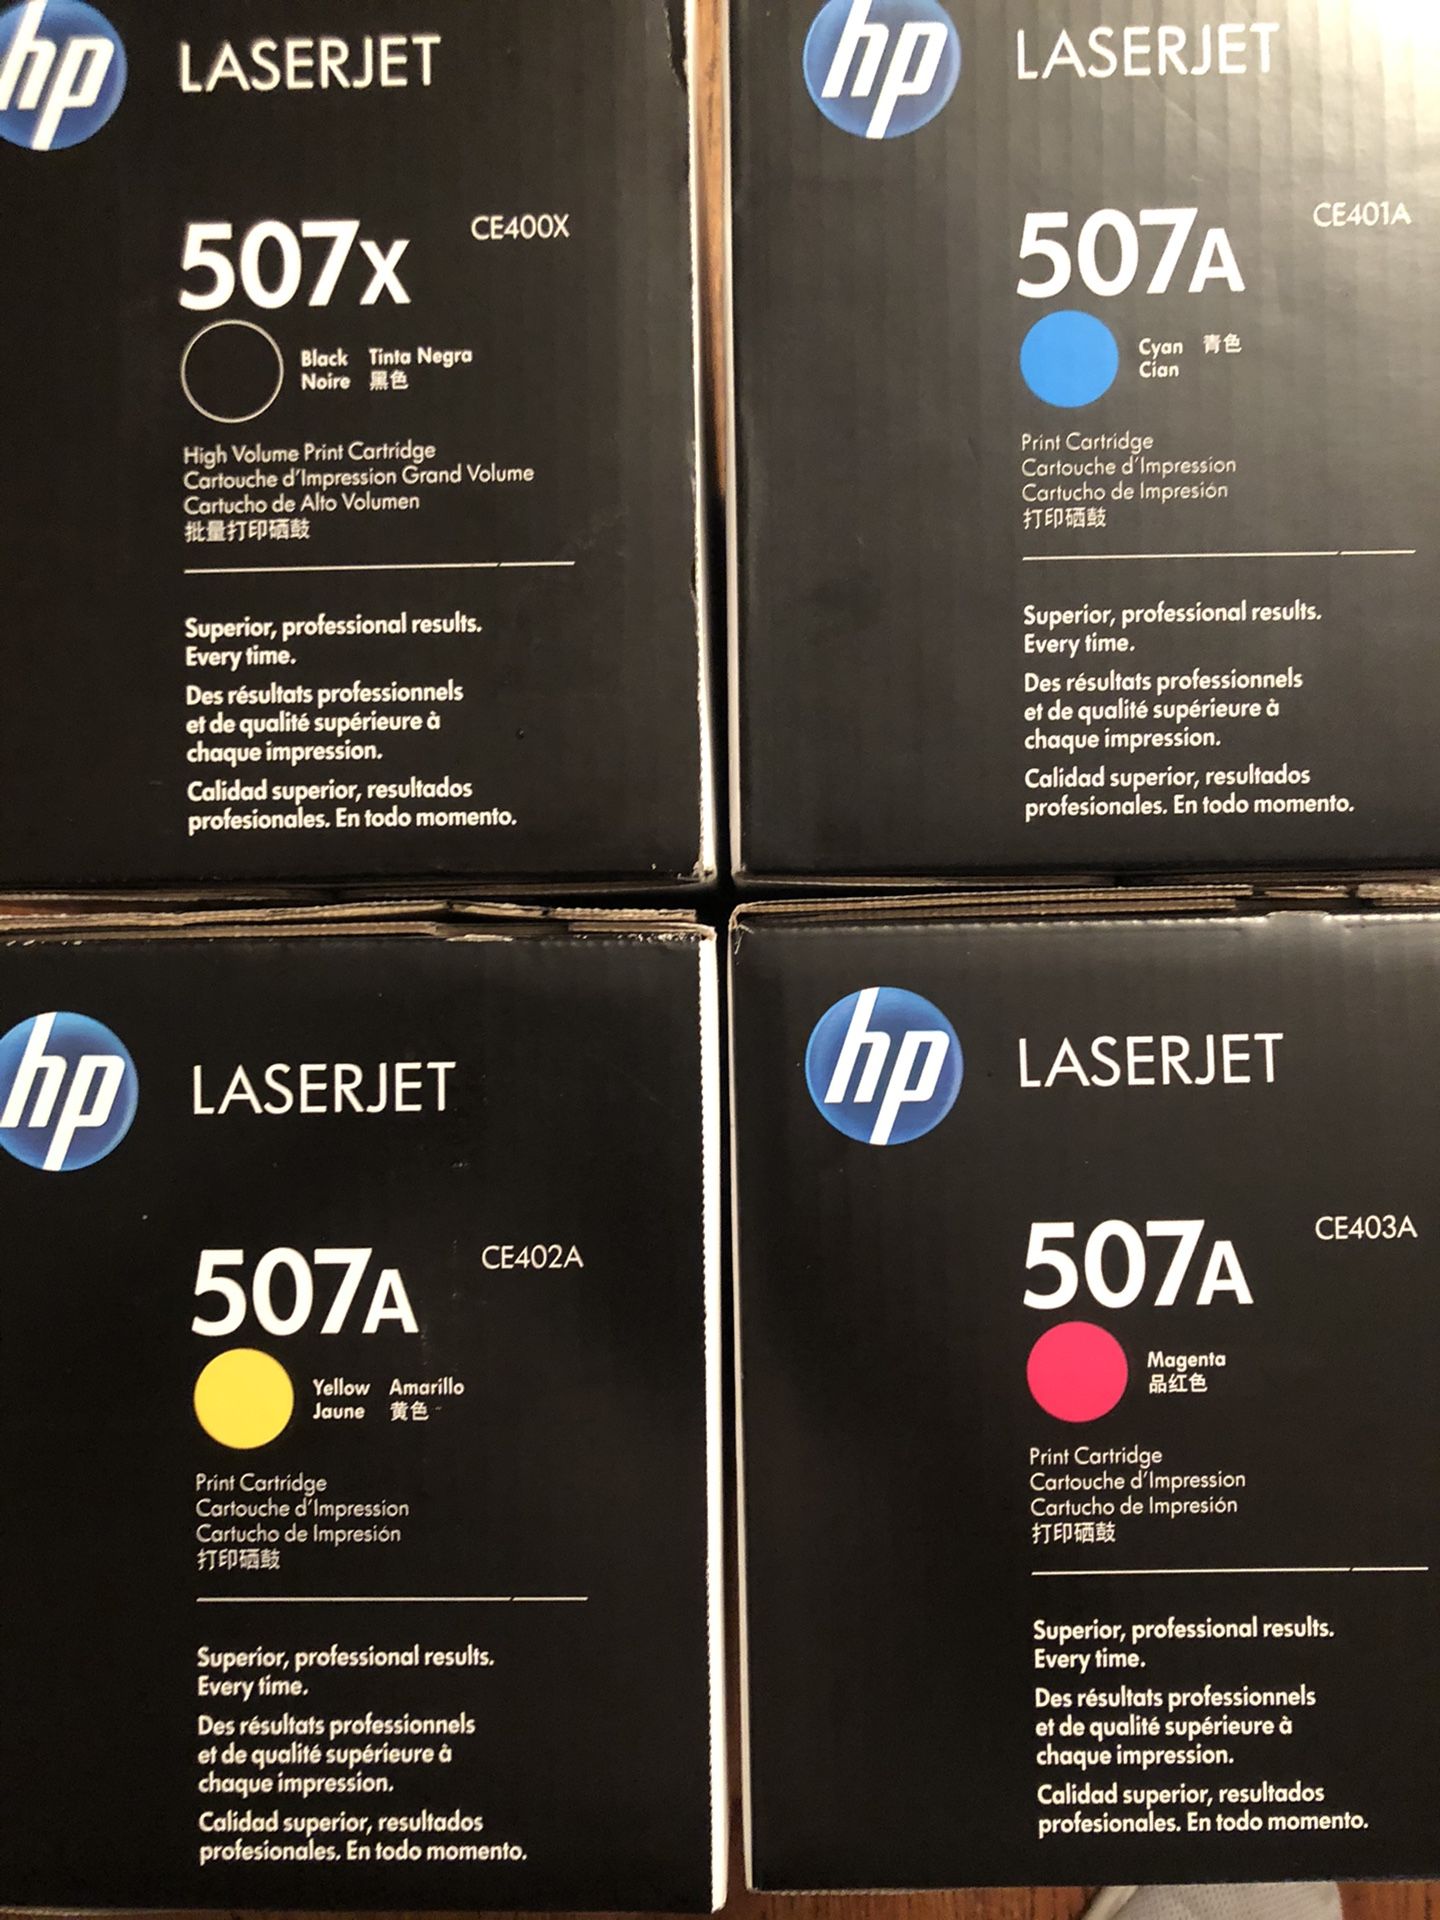 HP CE400X CE401A CE402A CE403A Set - New in A Box